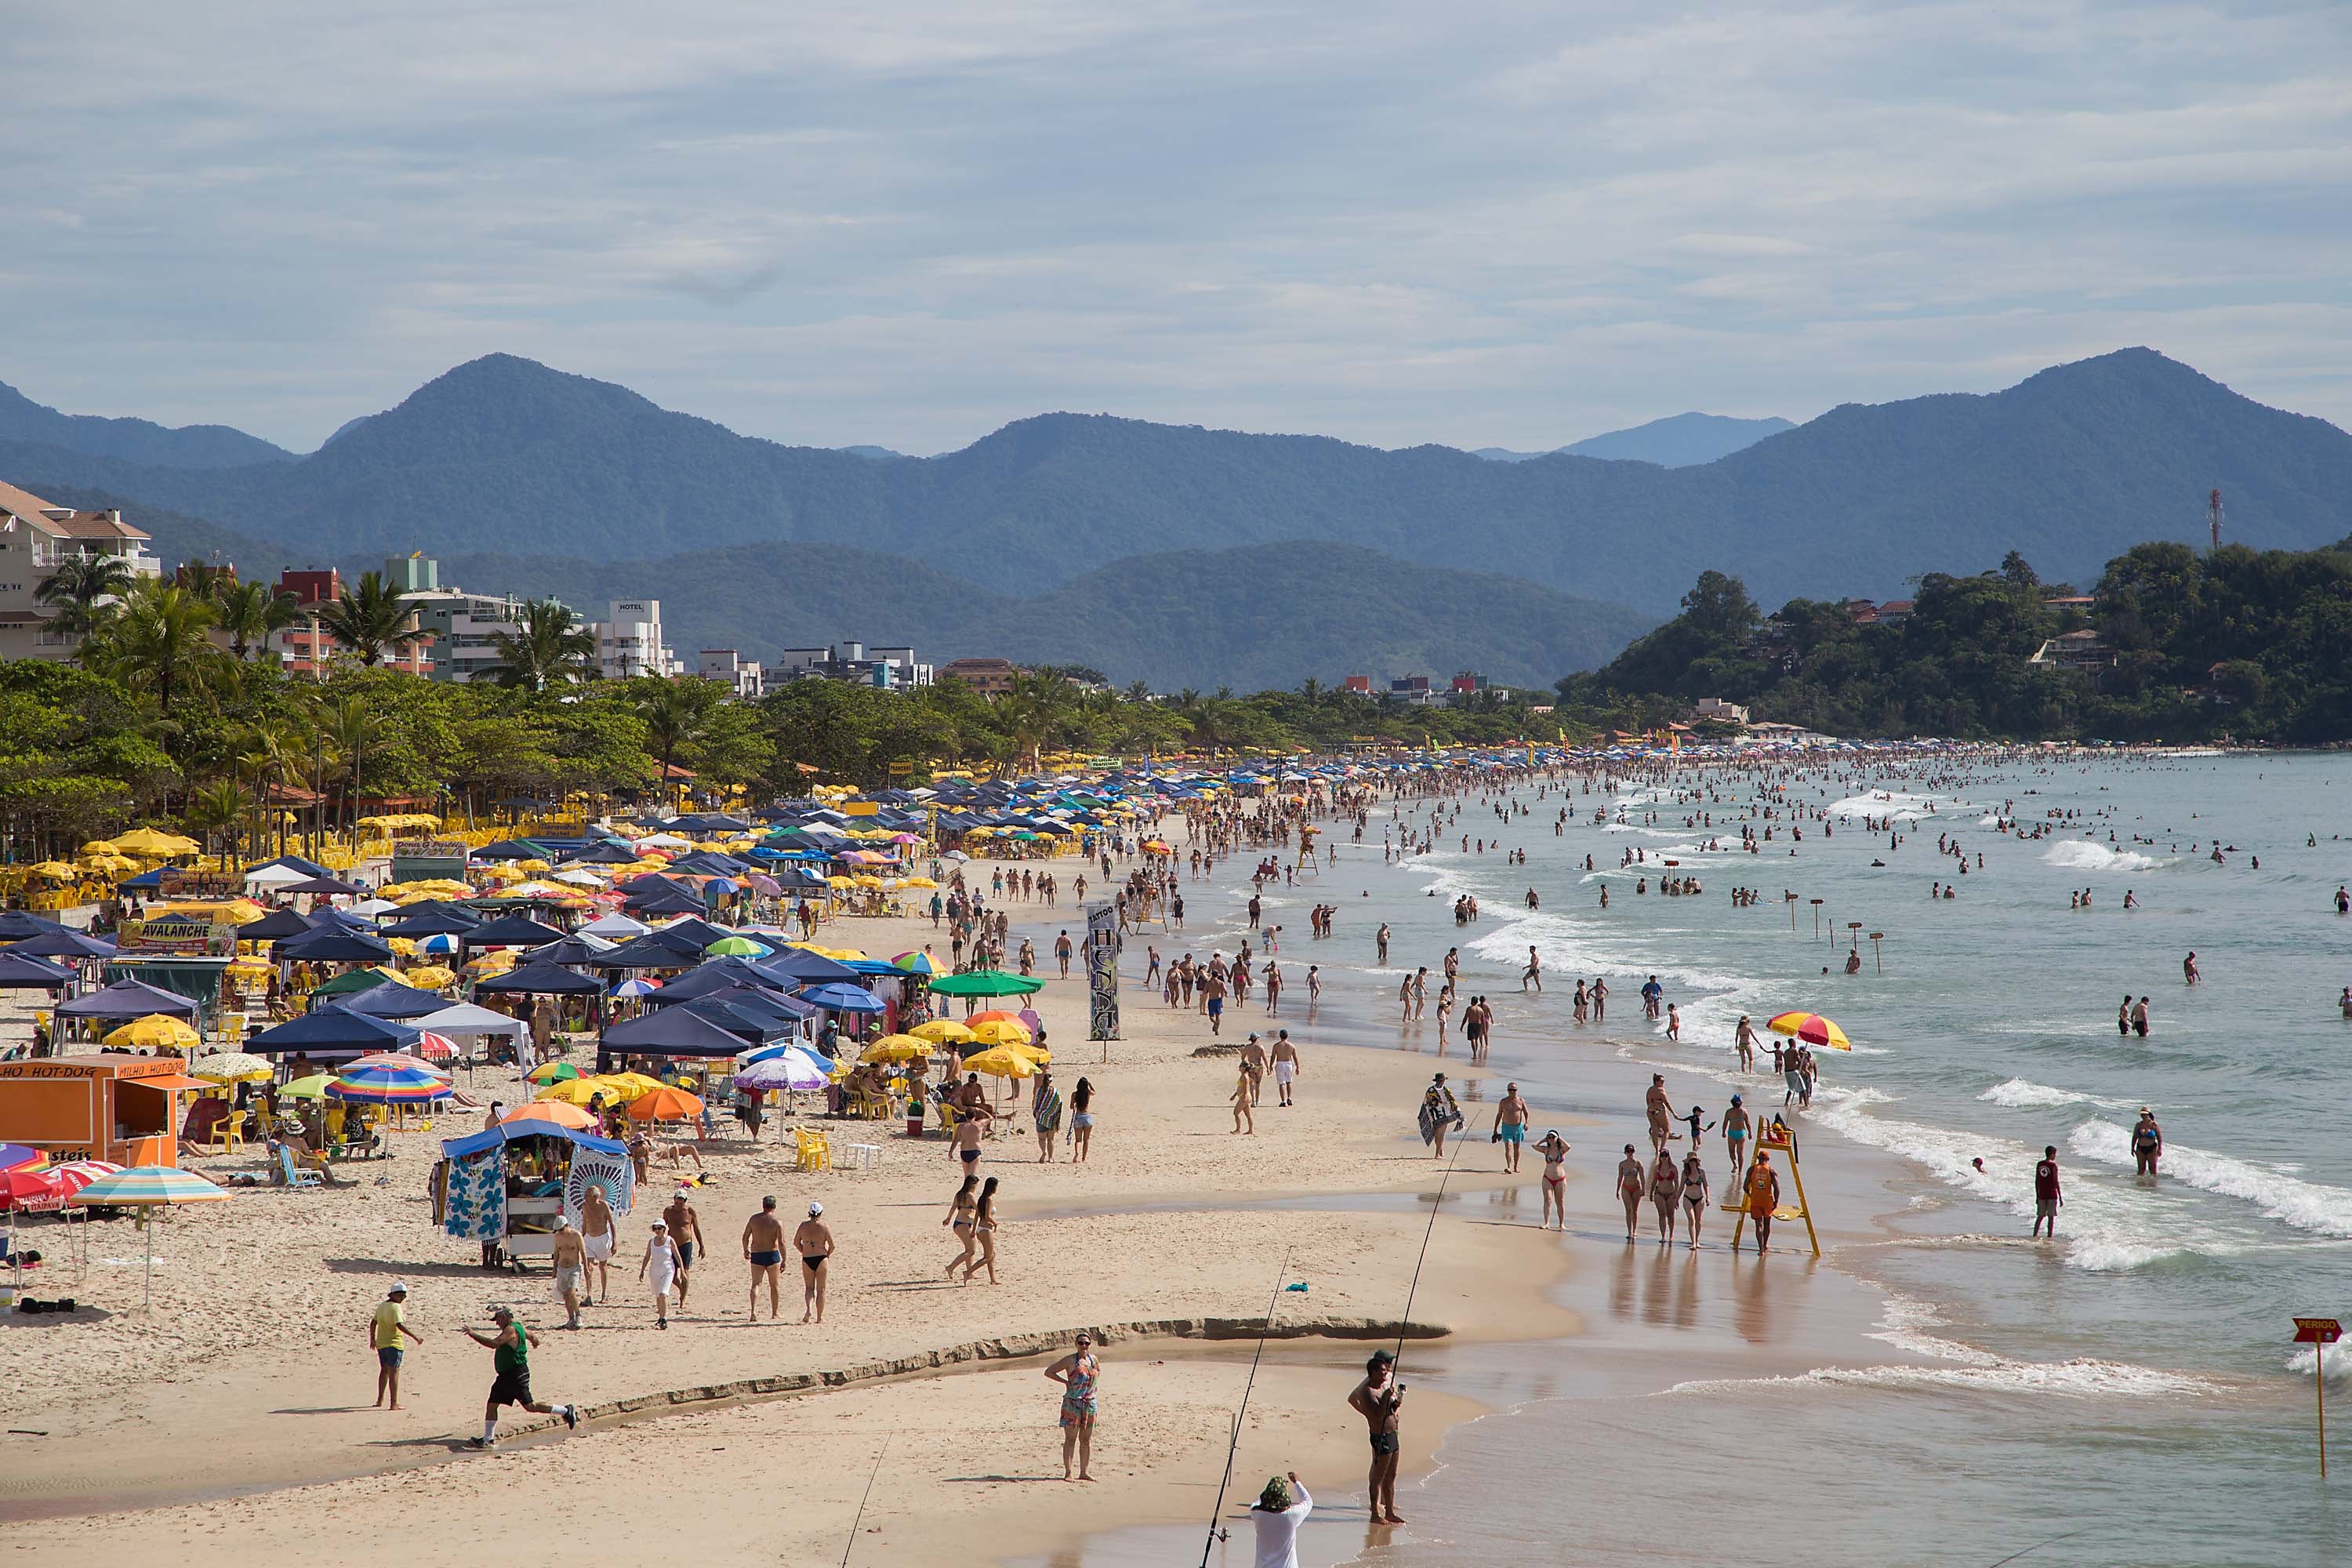 Destino preferido nos feriados prolongados no país é o litoral brasileiro (Foto: Reprodução)